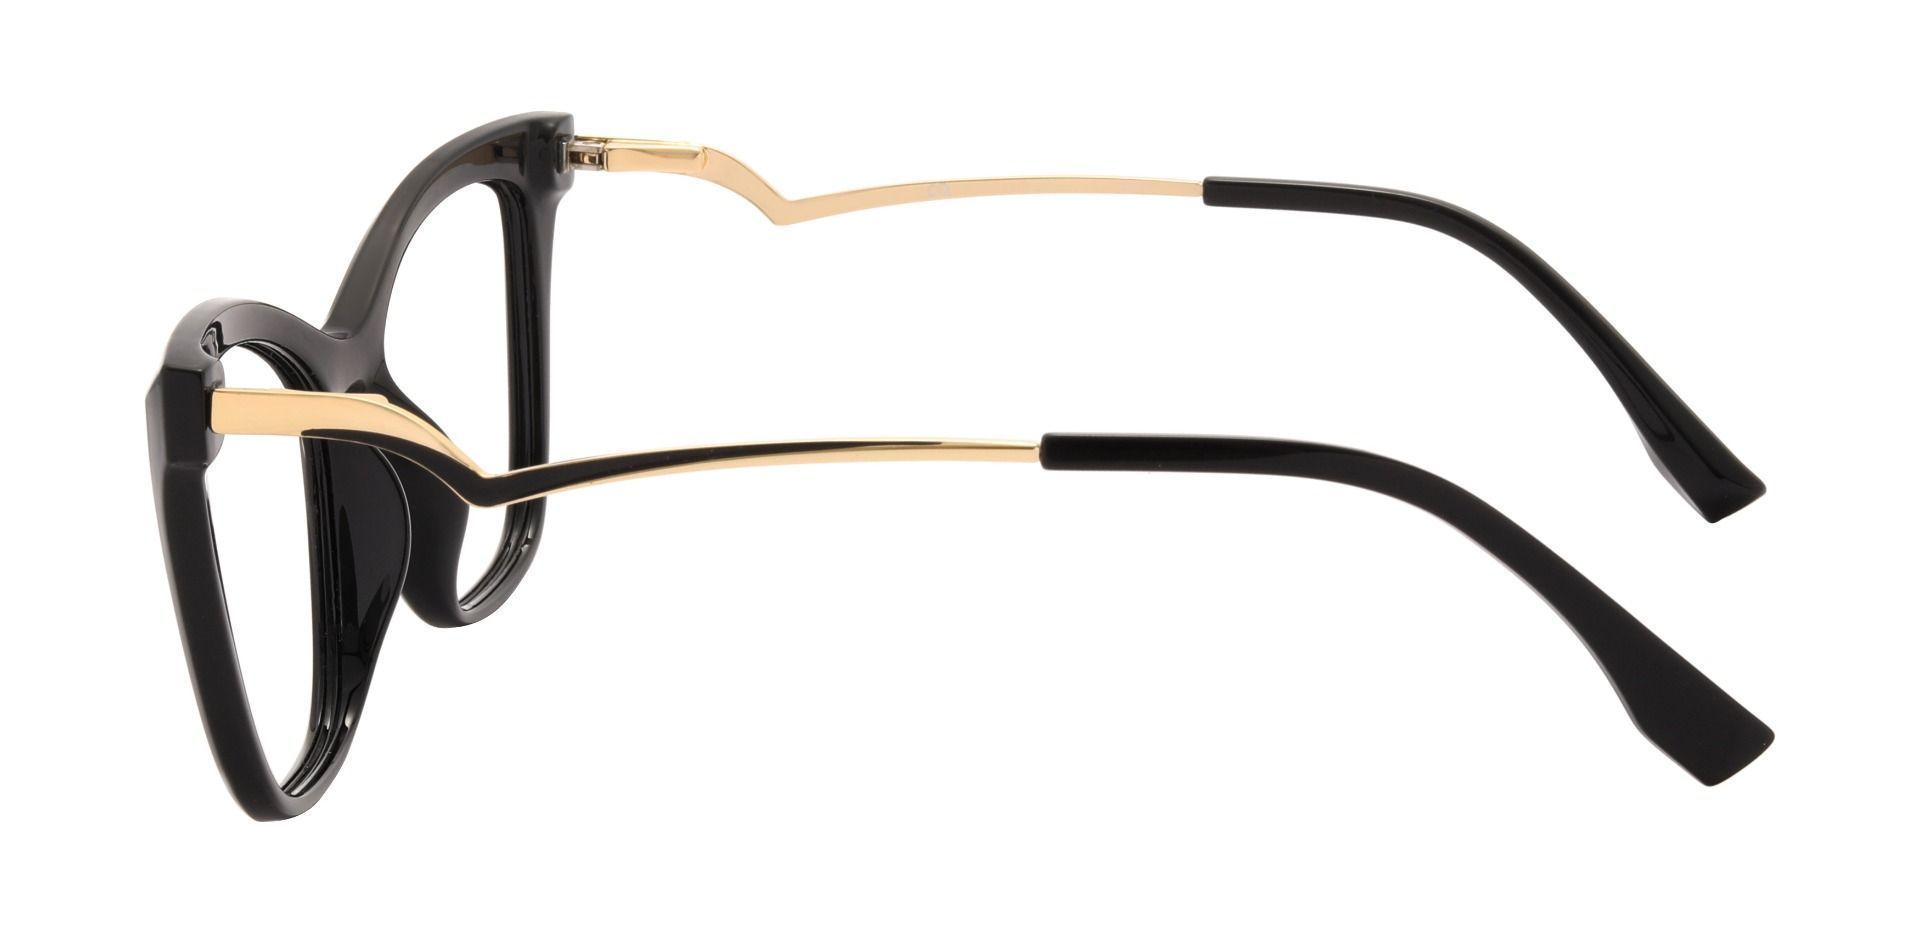 Miranda Cat Eye Prescription Glasses - Black